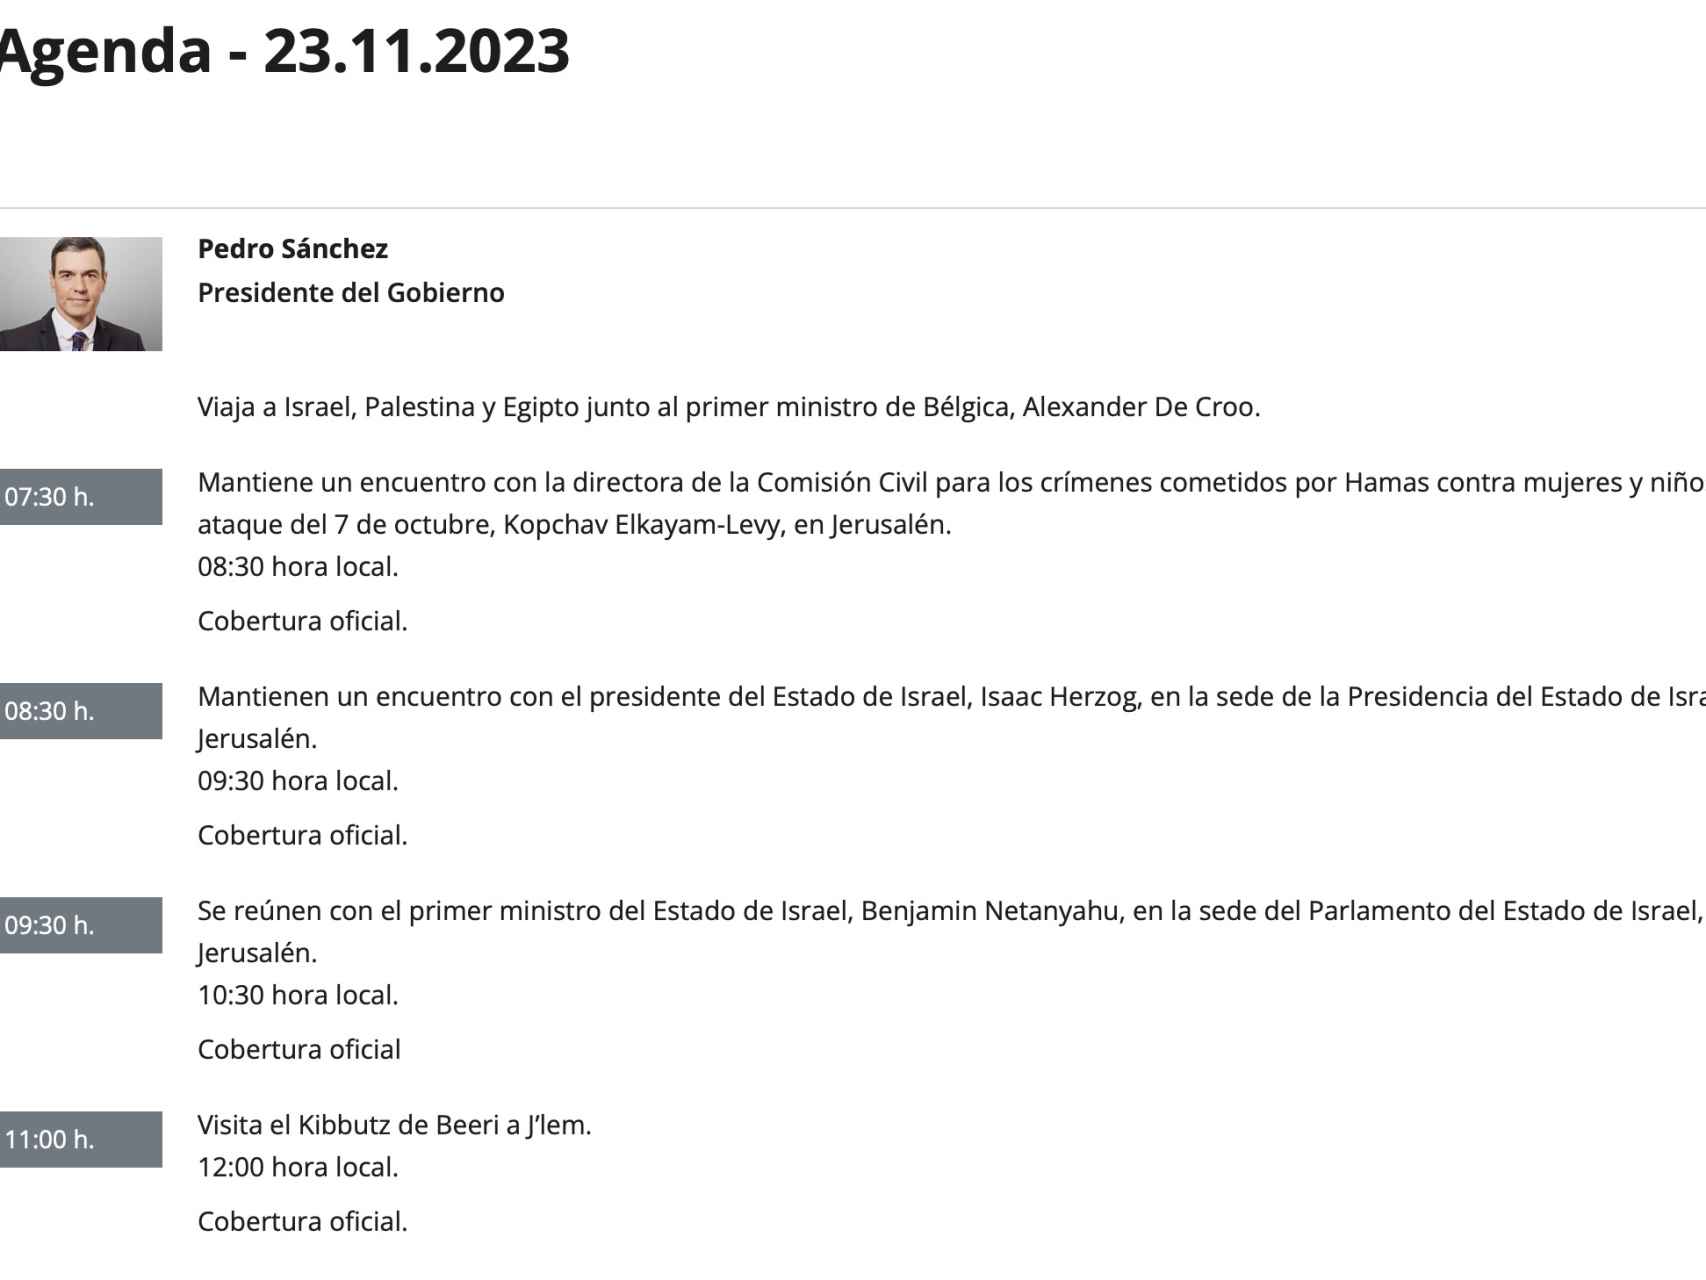 Captura de pantalla de la agenda del presidente de este jueves 23 de noviembre.